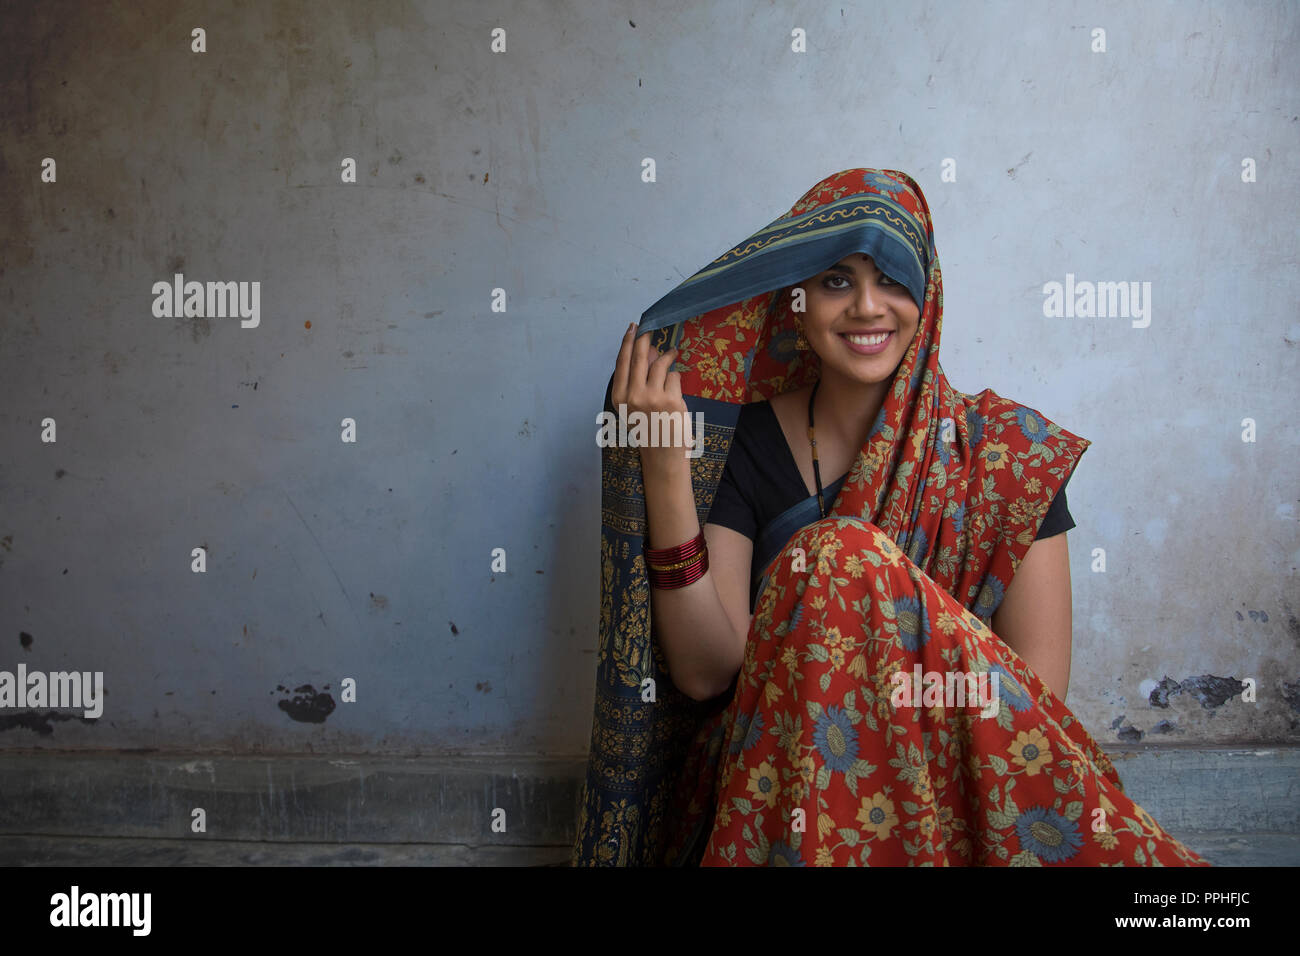 Primer plano de una bella mujer sonriente sentada en el suelo que cubre su cabeza con saree. Foto de stock